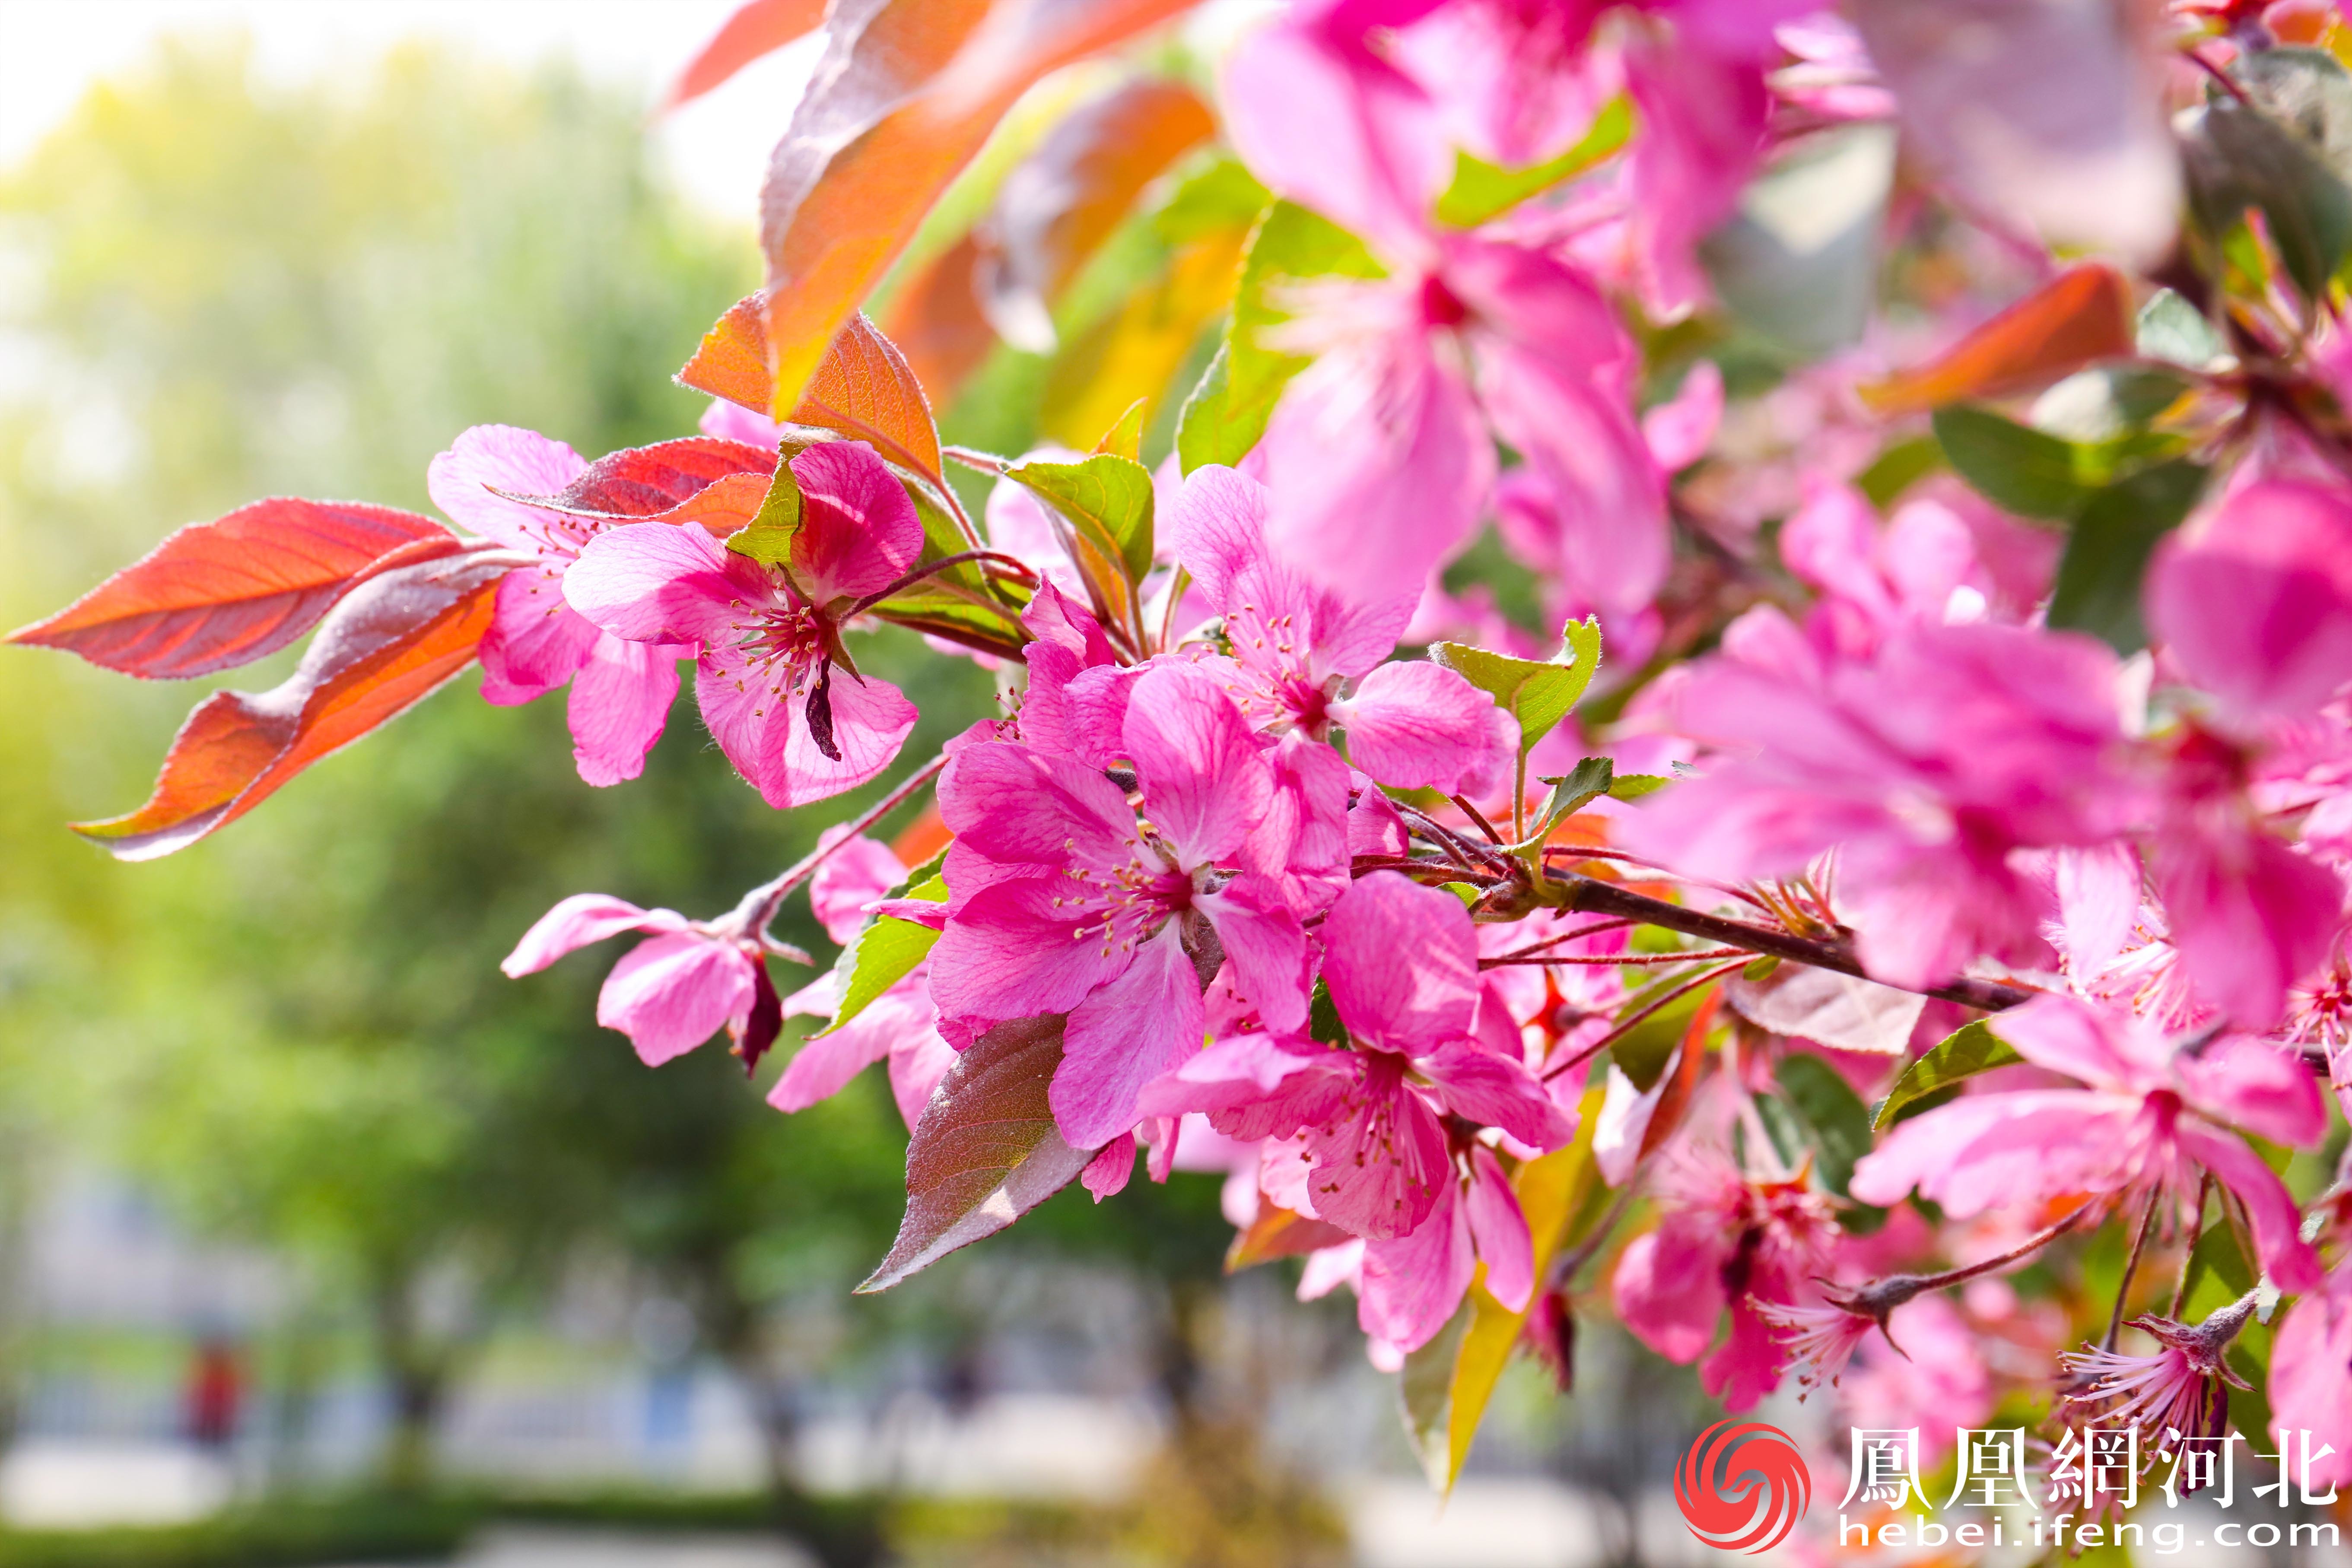 春天海棠花盛开的景象让市民们感受到春天的气息和生命的活力。